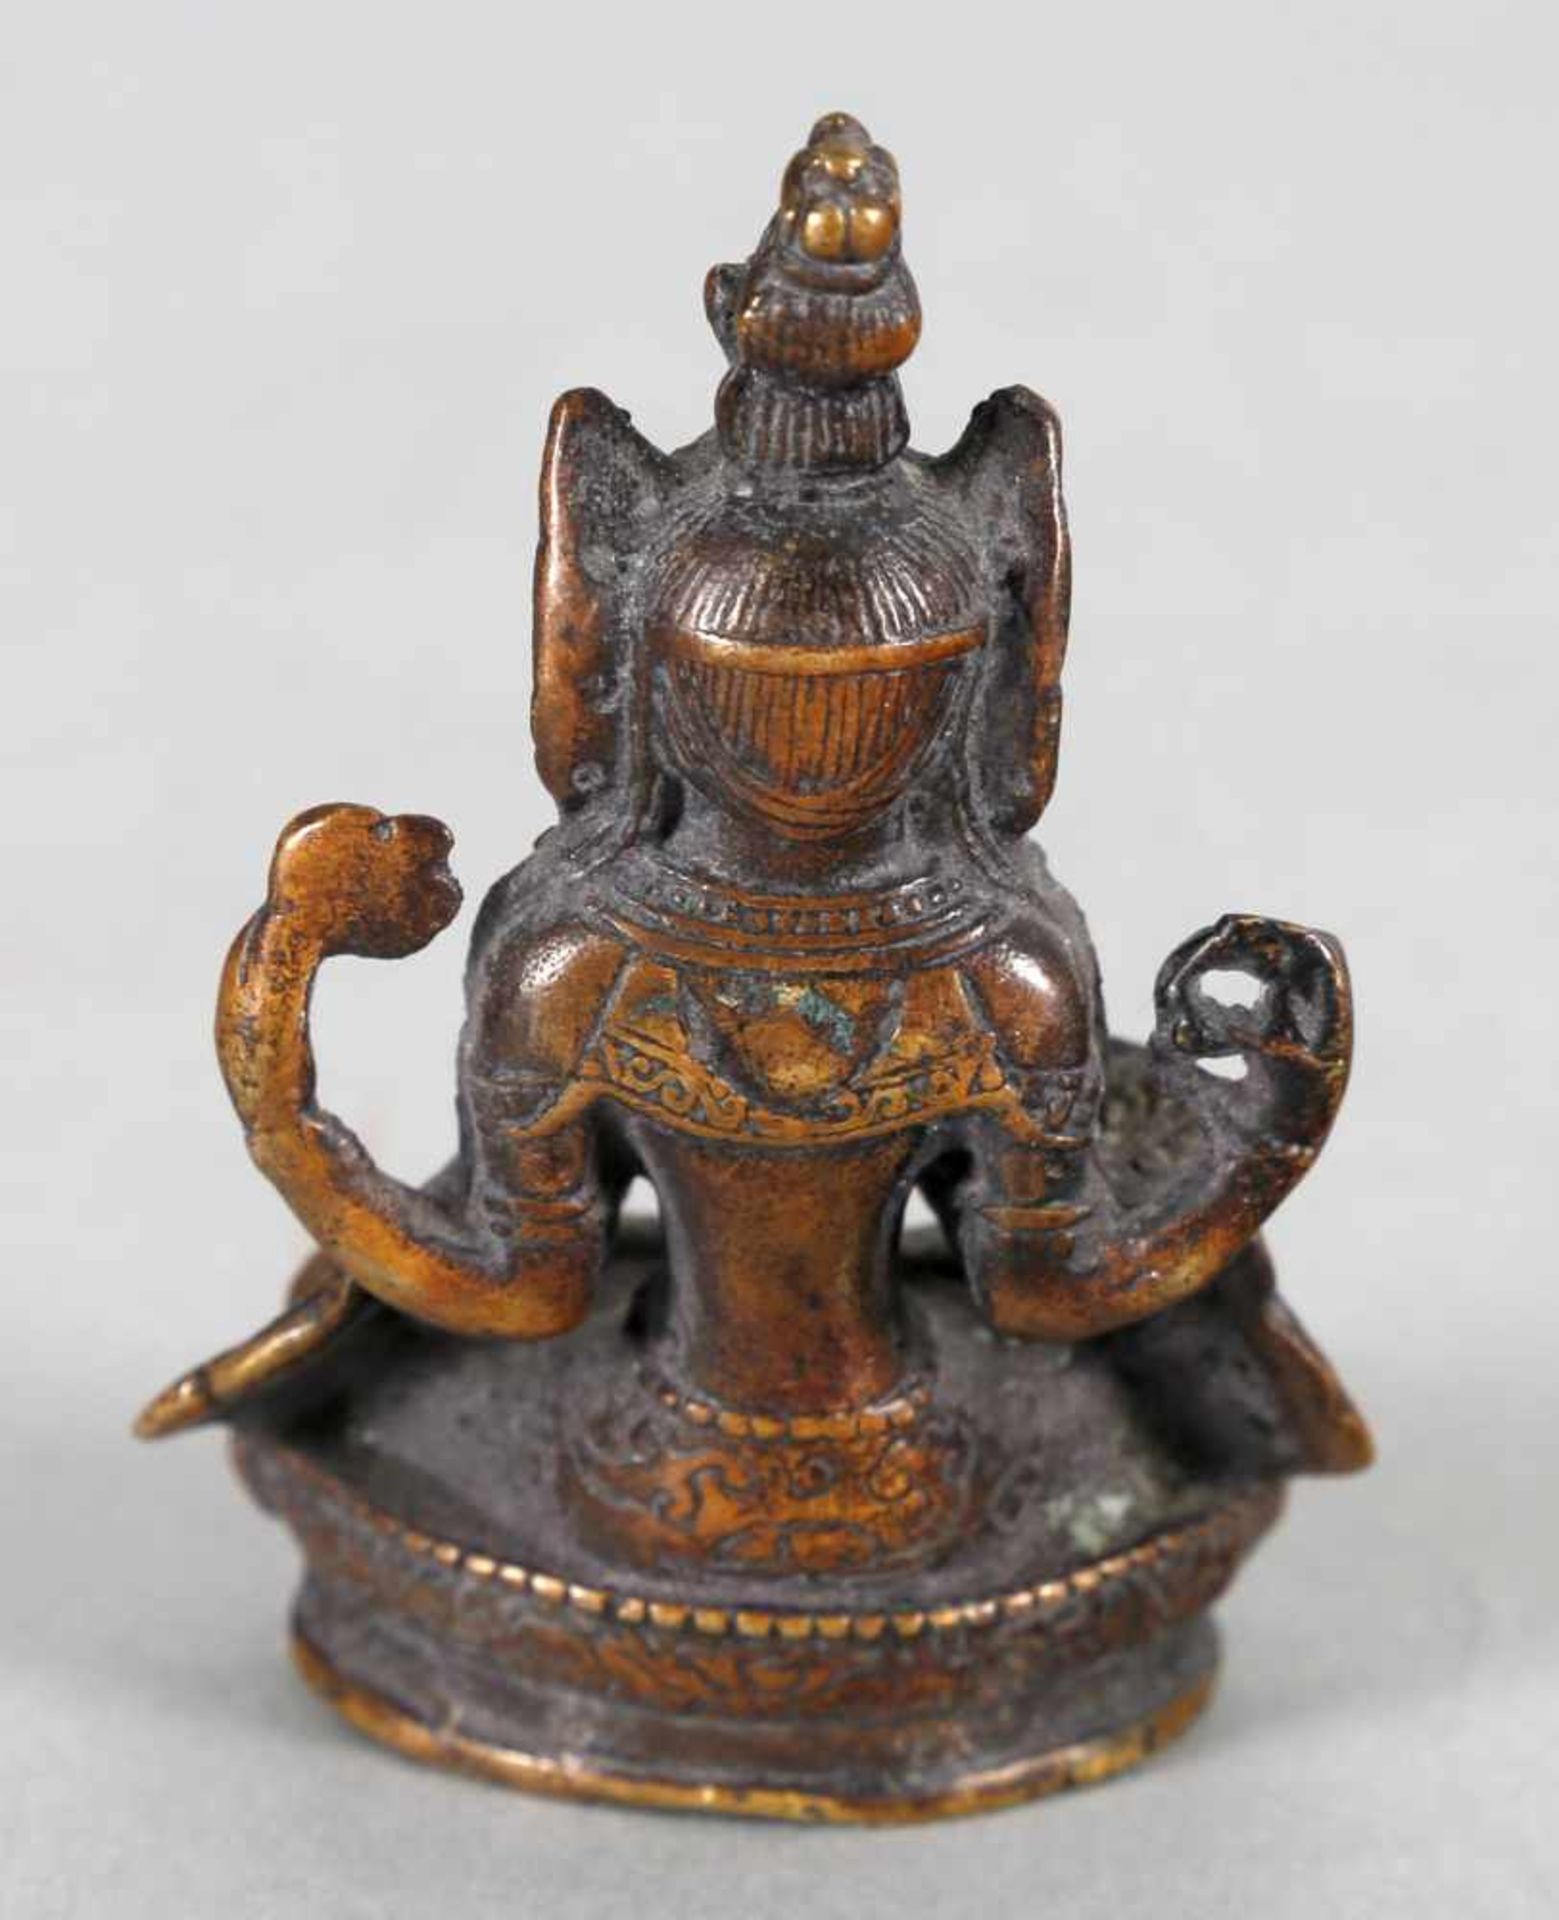 Skulptur Betender Buddha aus Bronze, China/Tibet, wohl 18./19. Jh.möglicherweise handelt es sich - Bild 2 aus 3